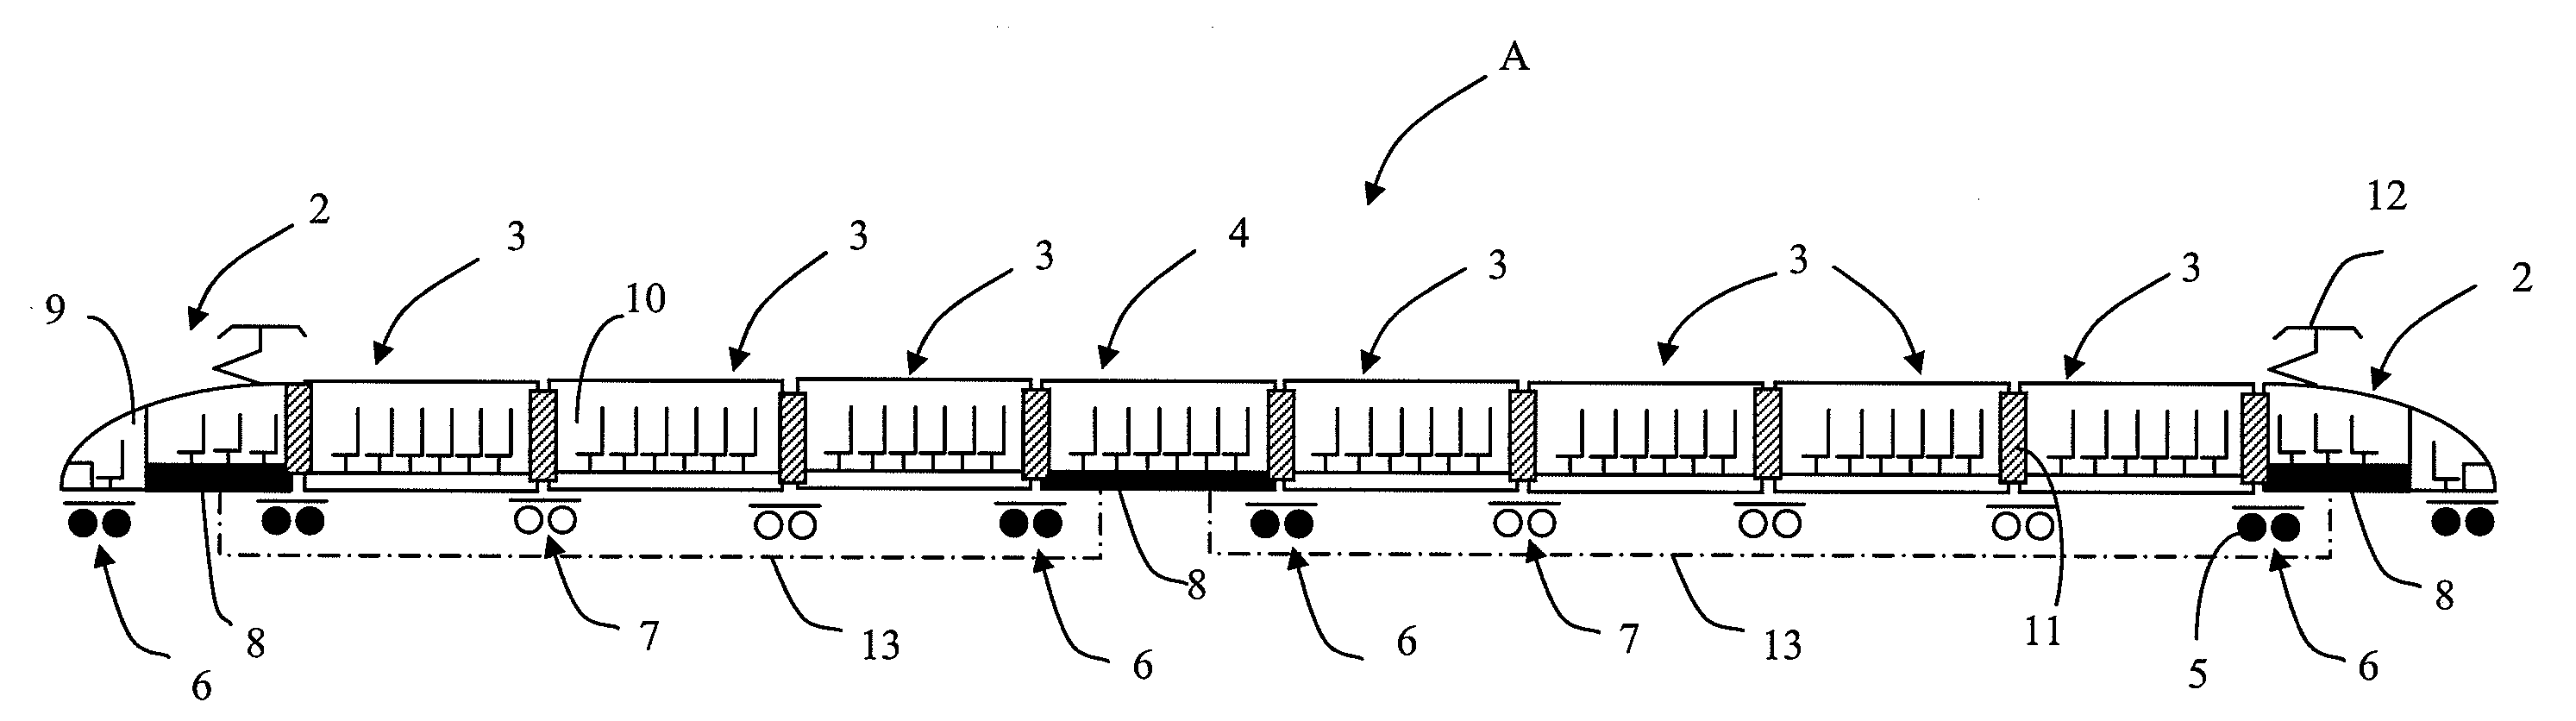 Railcar for passenger transport